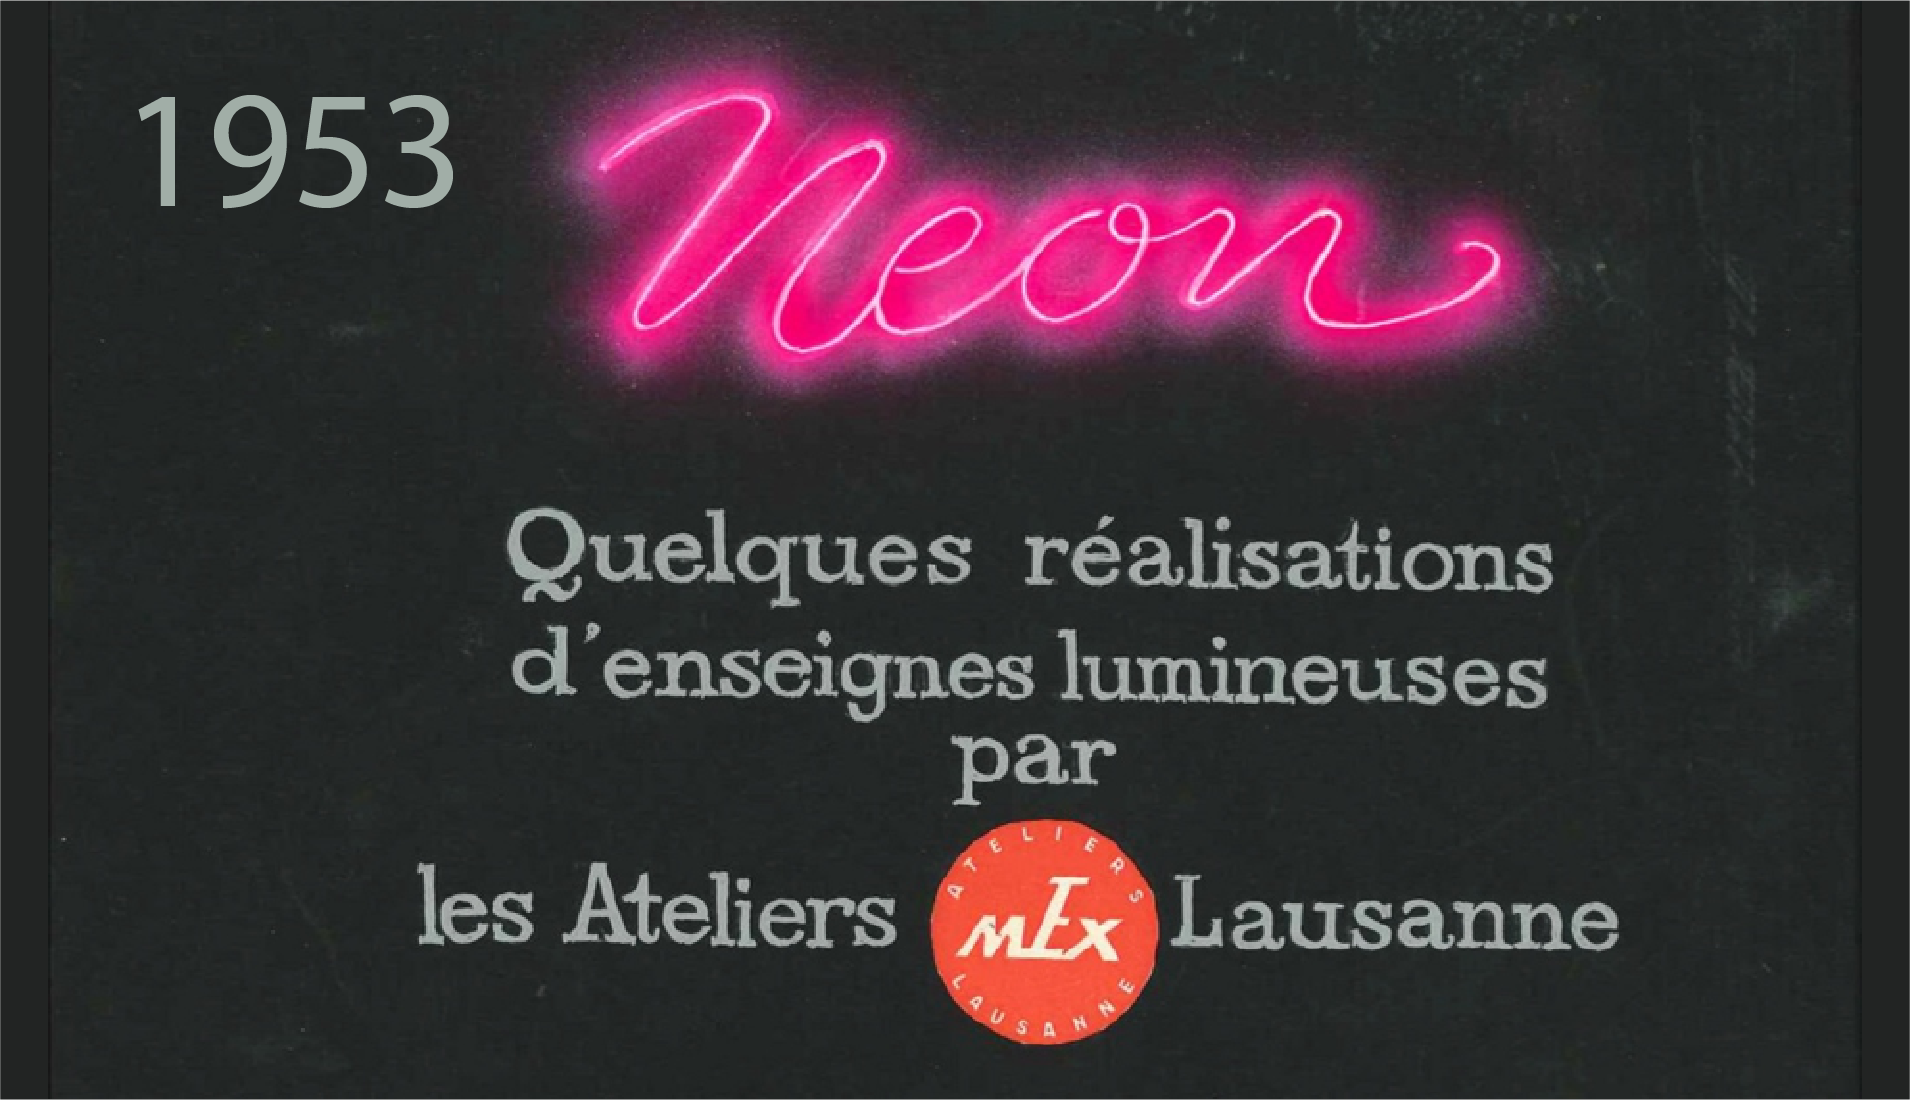 Atelier Mex - 1953